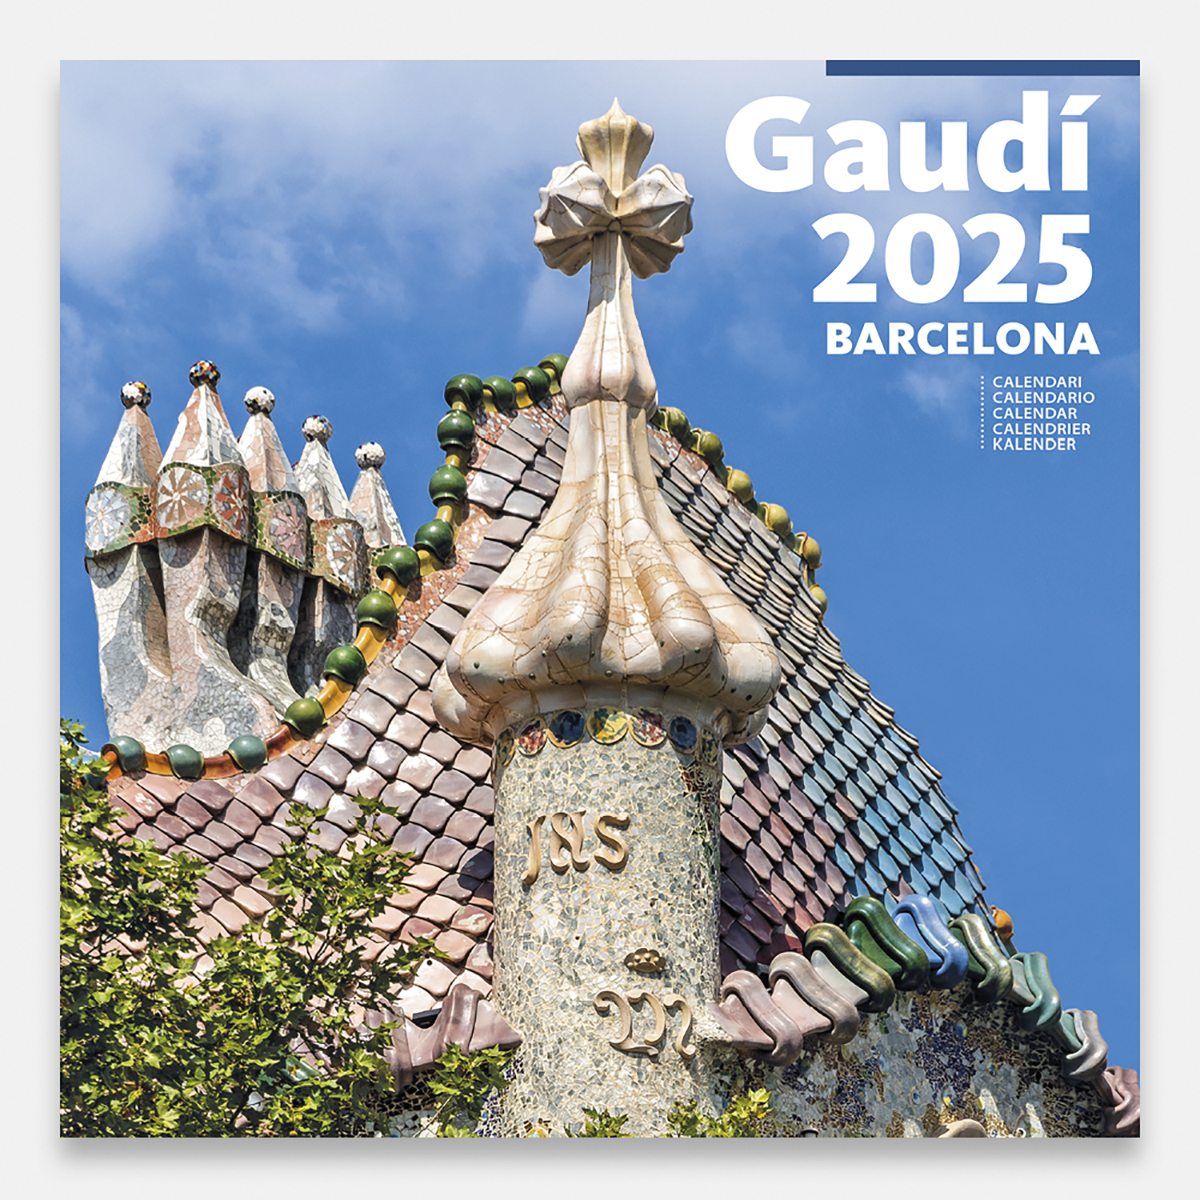 Calendrier 2025 Gaudí-1 A (Batlló) 25gg1 a calendario pared 2025 gaudi batllo